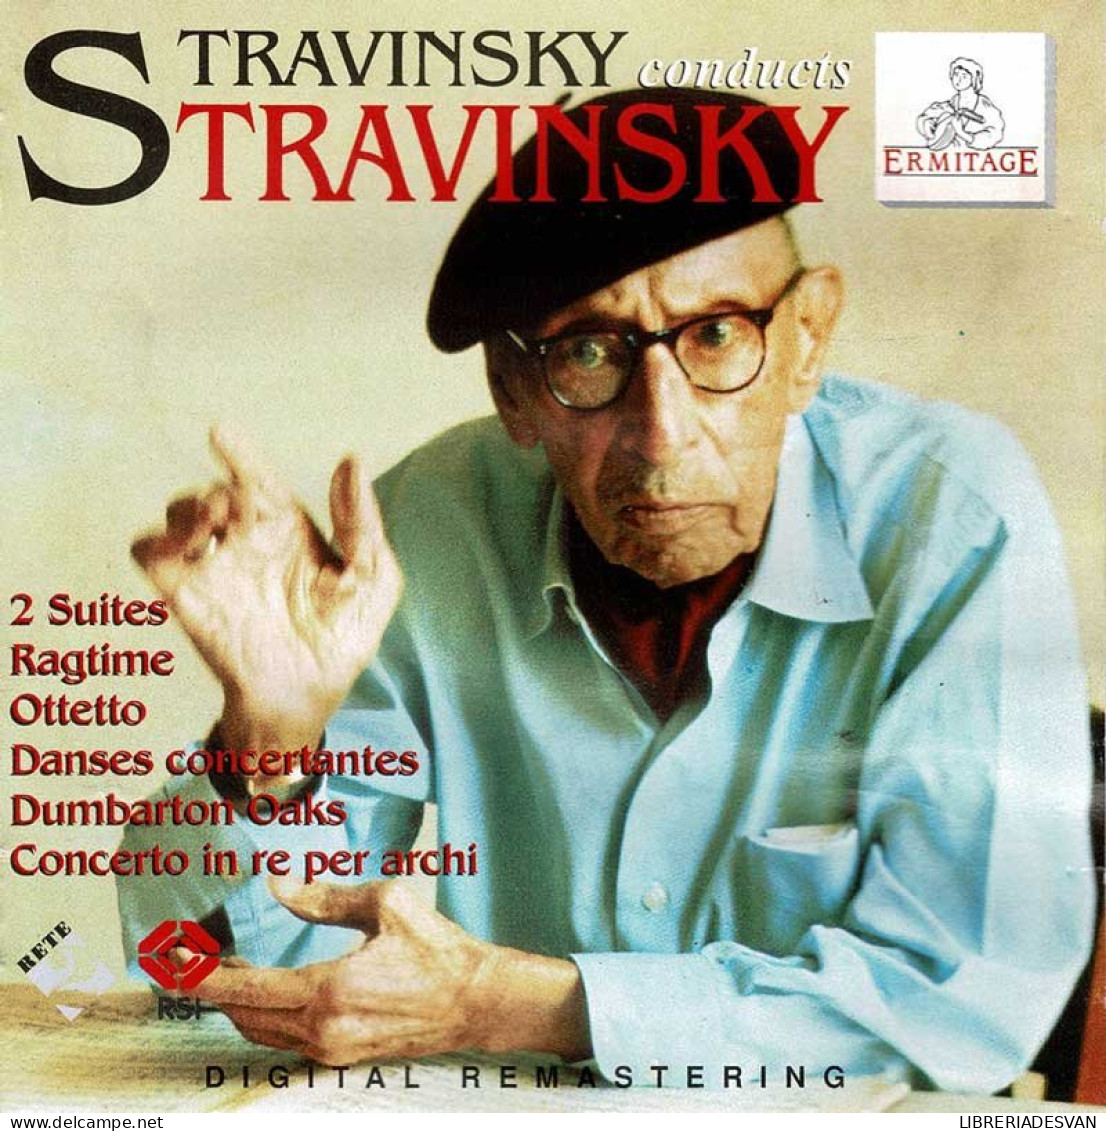 Igor Stravinsky - Stravinsky Conducts Stravinsky. CD - Clásica